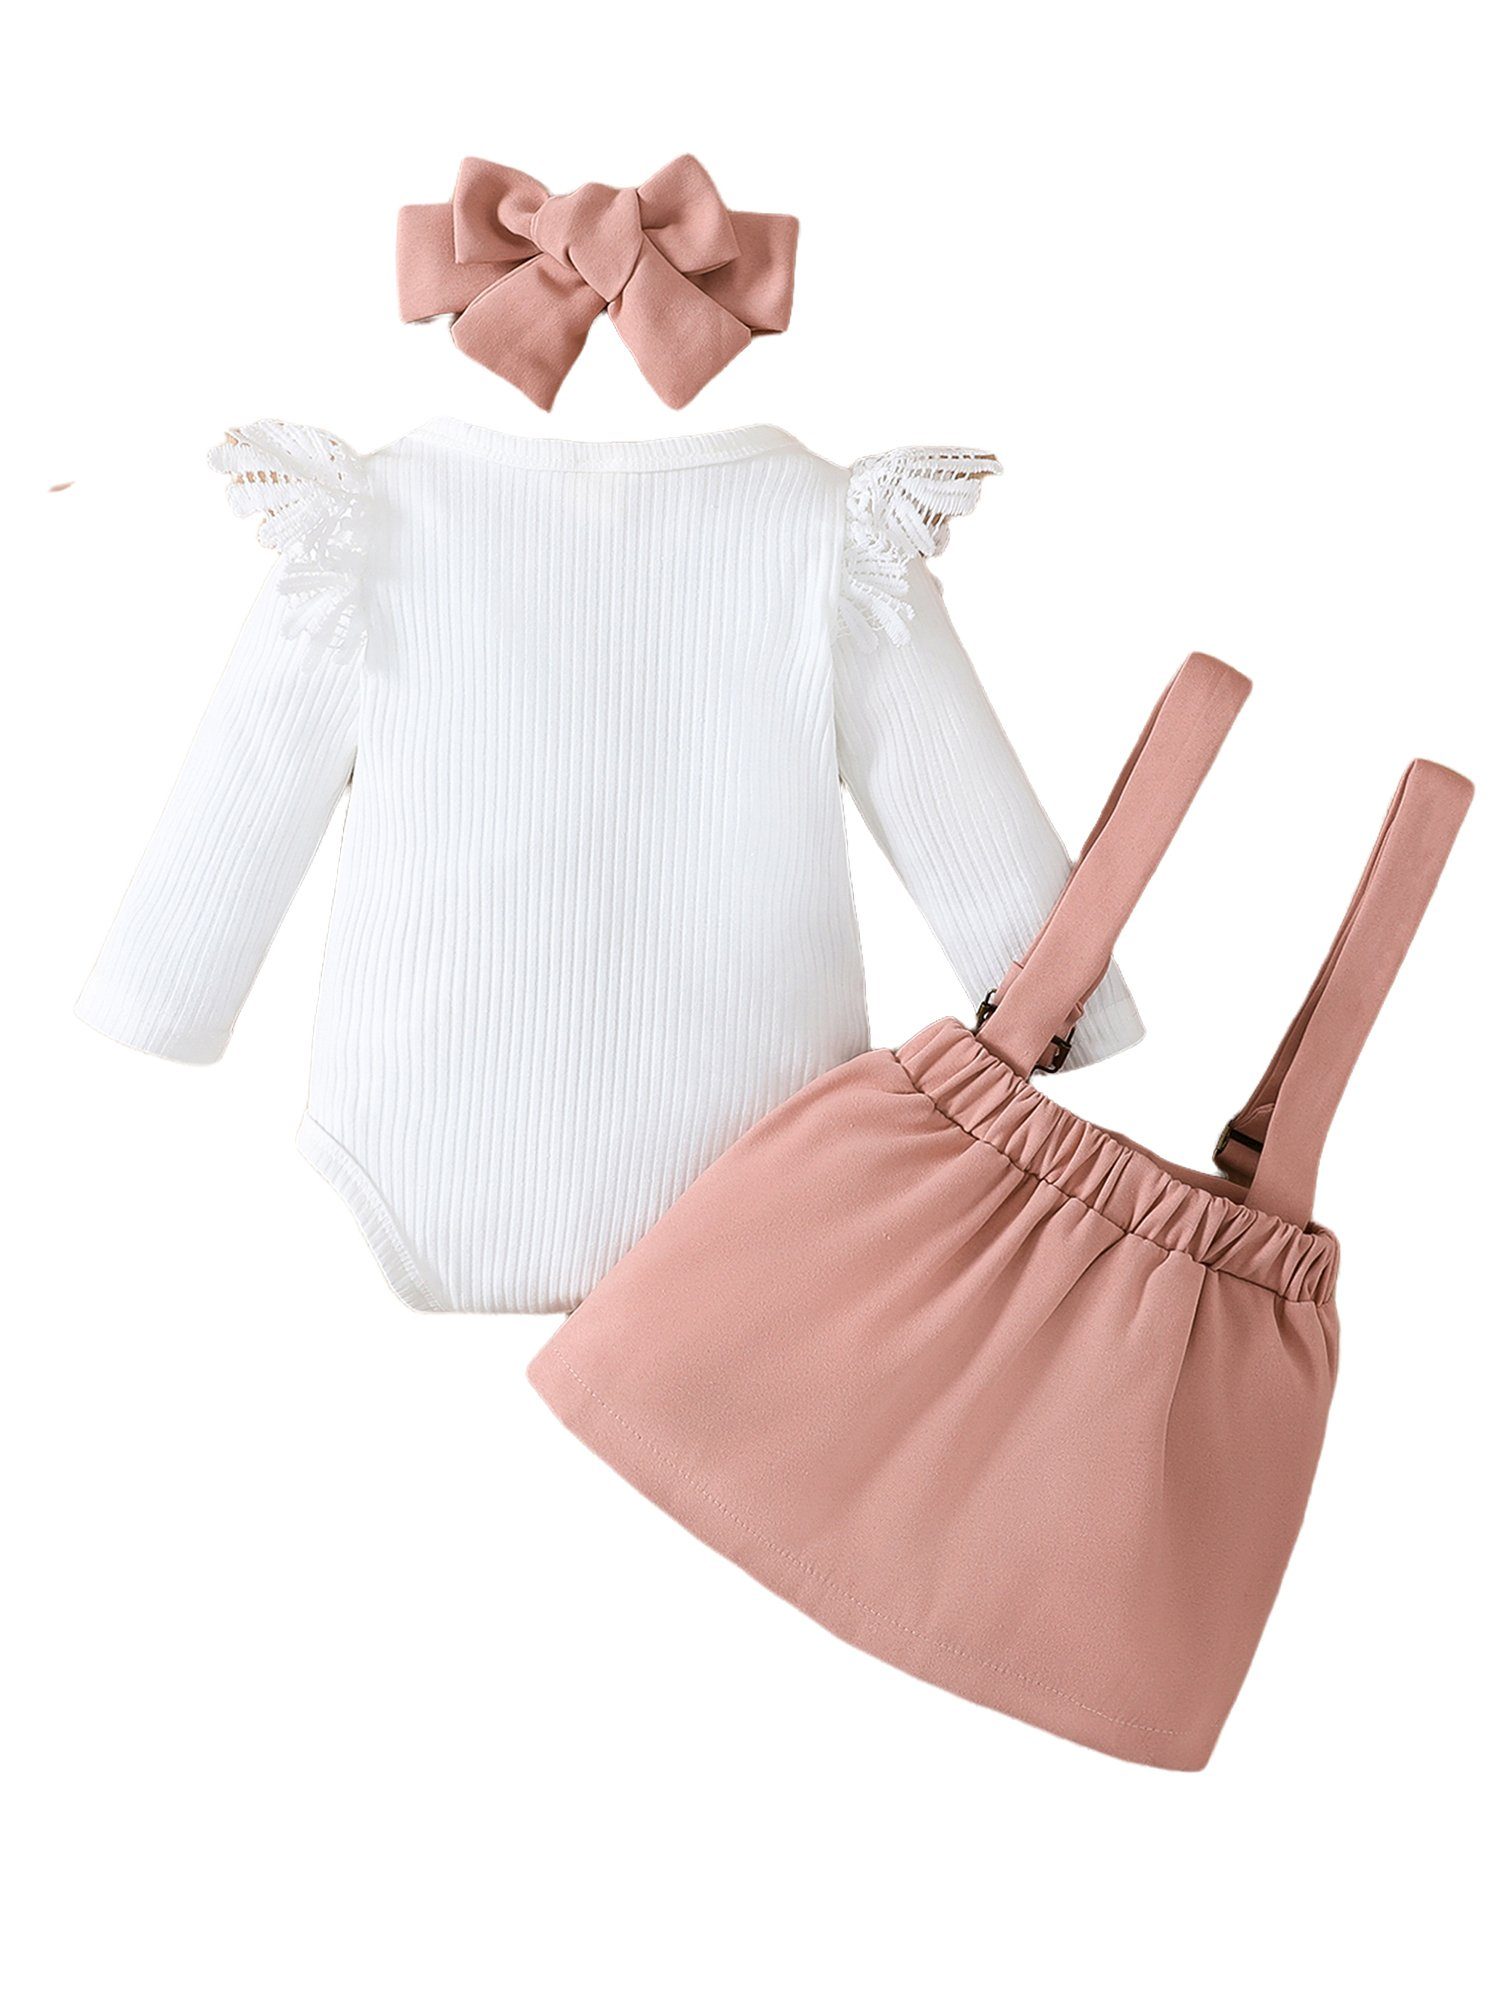 LAPA Shirt, Rock & Spitzeneinsatz + Design, Strampler (3-tlg) einfarbiges Baby Haarband + mit Kontrast Party-Set Haarband Mädchen für Trägerrock